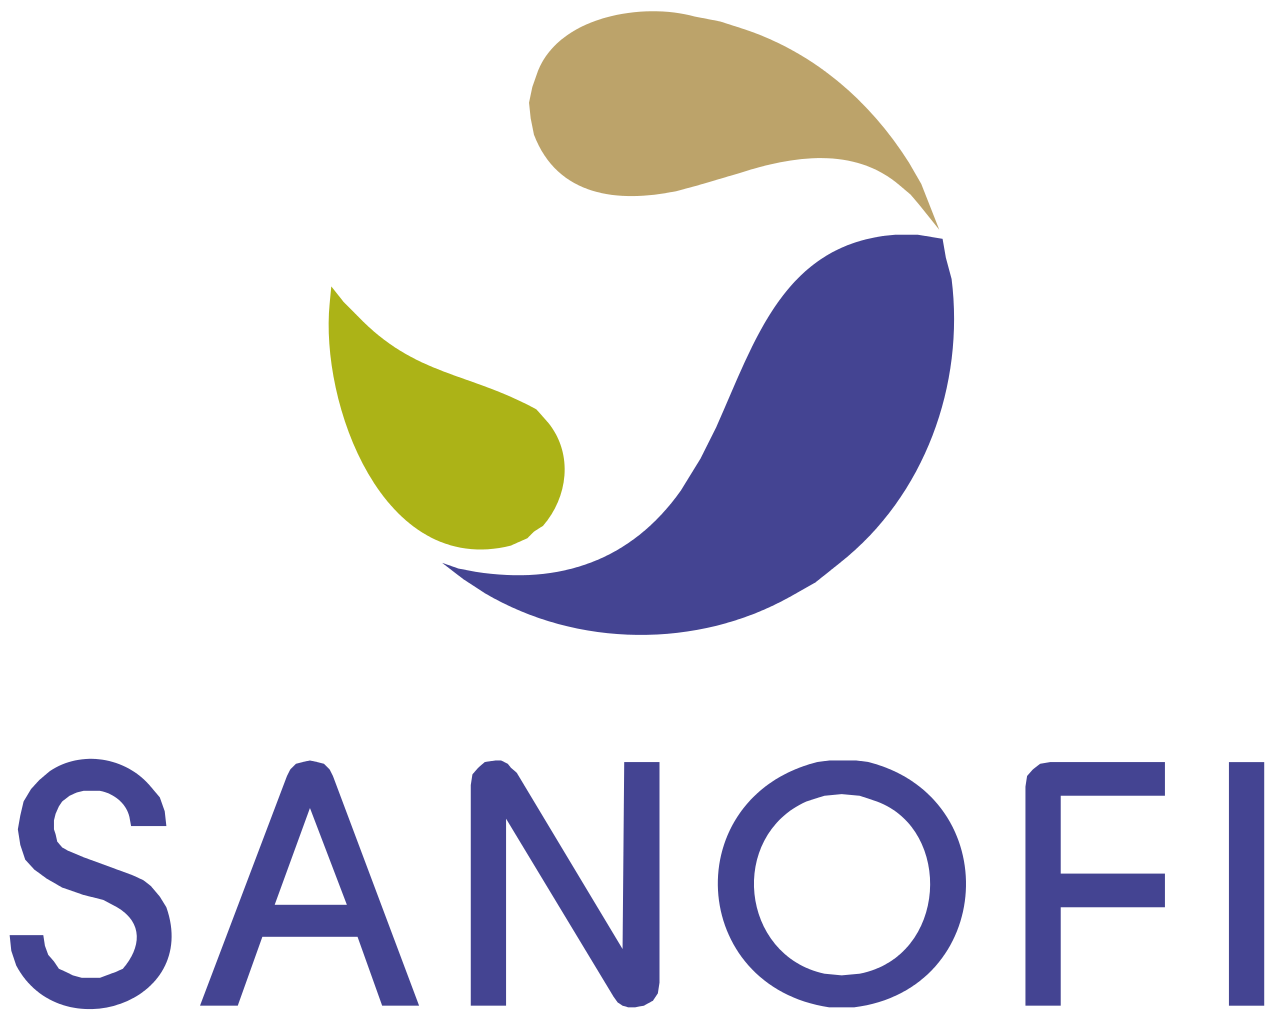 Sanofi_logo.png